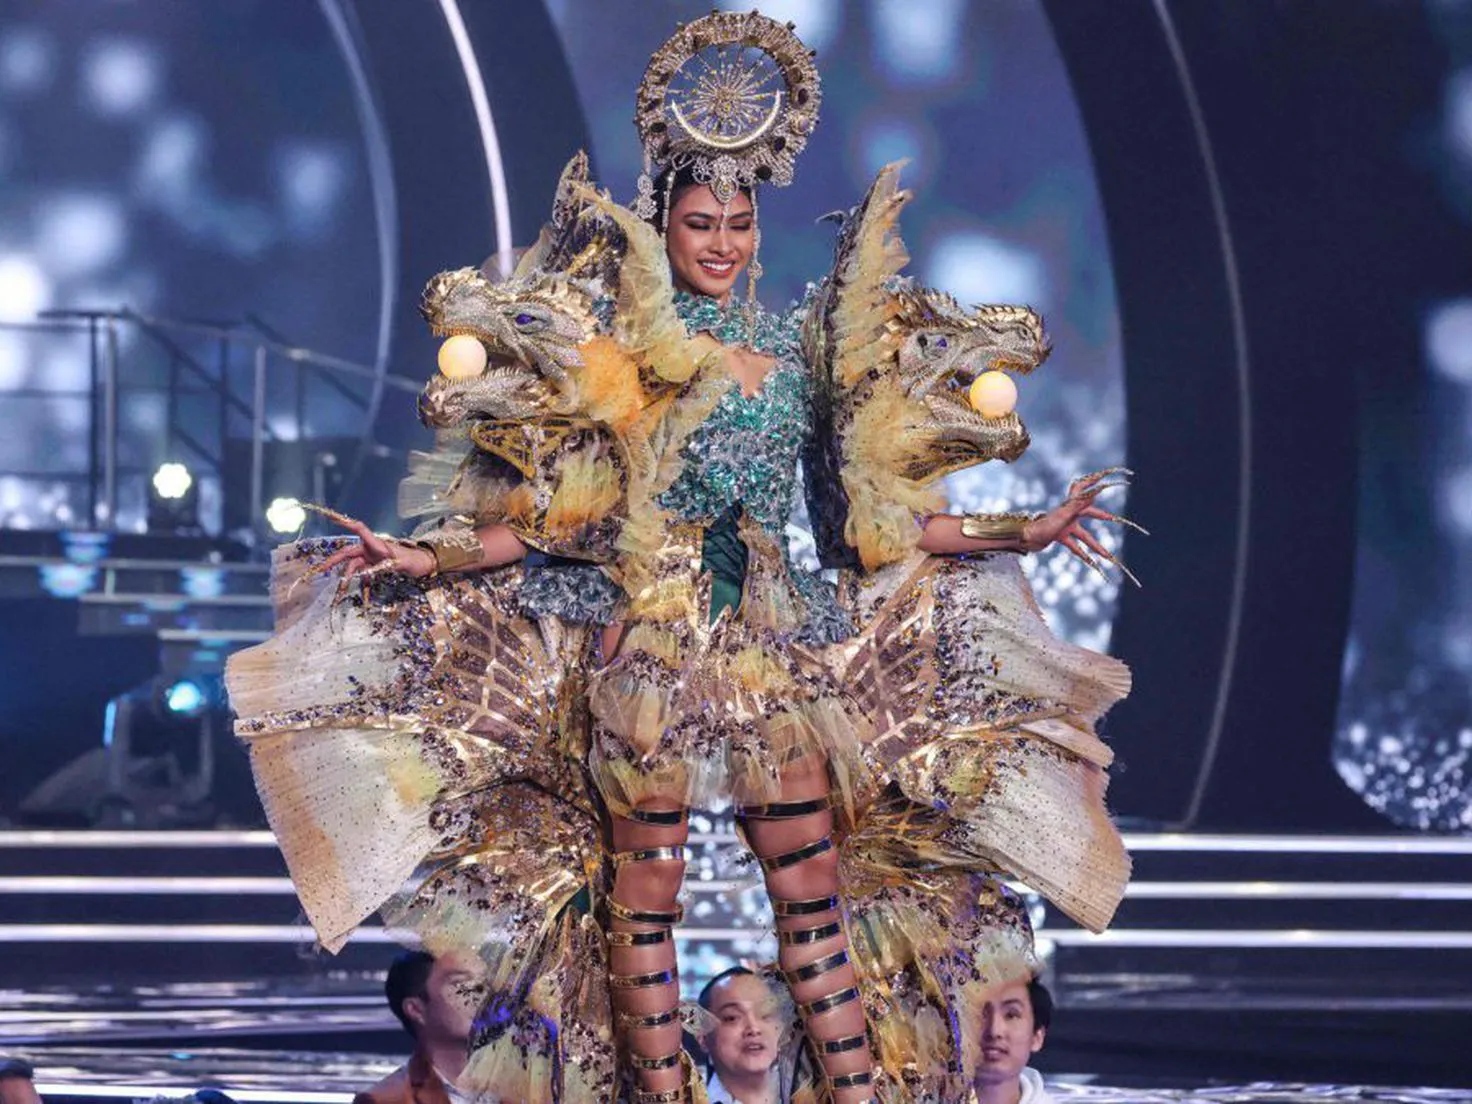 Los 10 mejores trajes del festival Miss Universo de la historia - Tikitakas